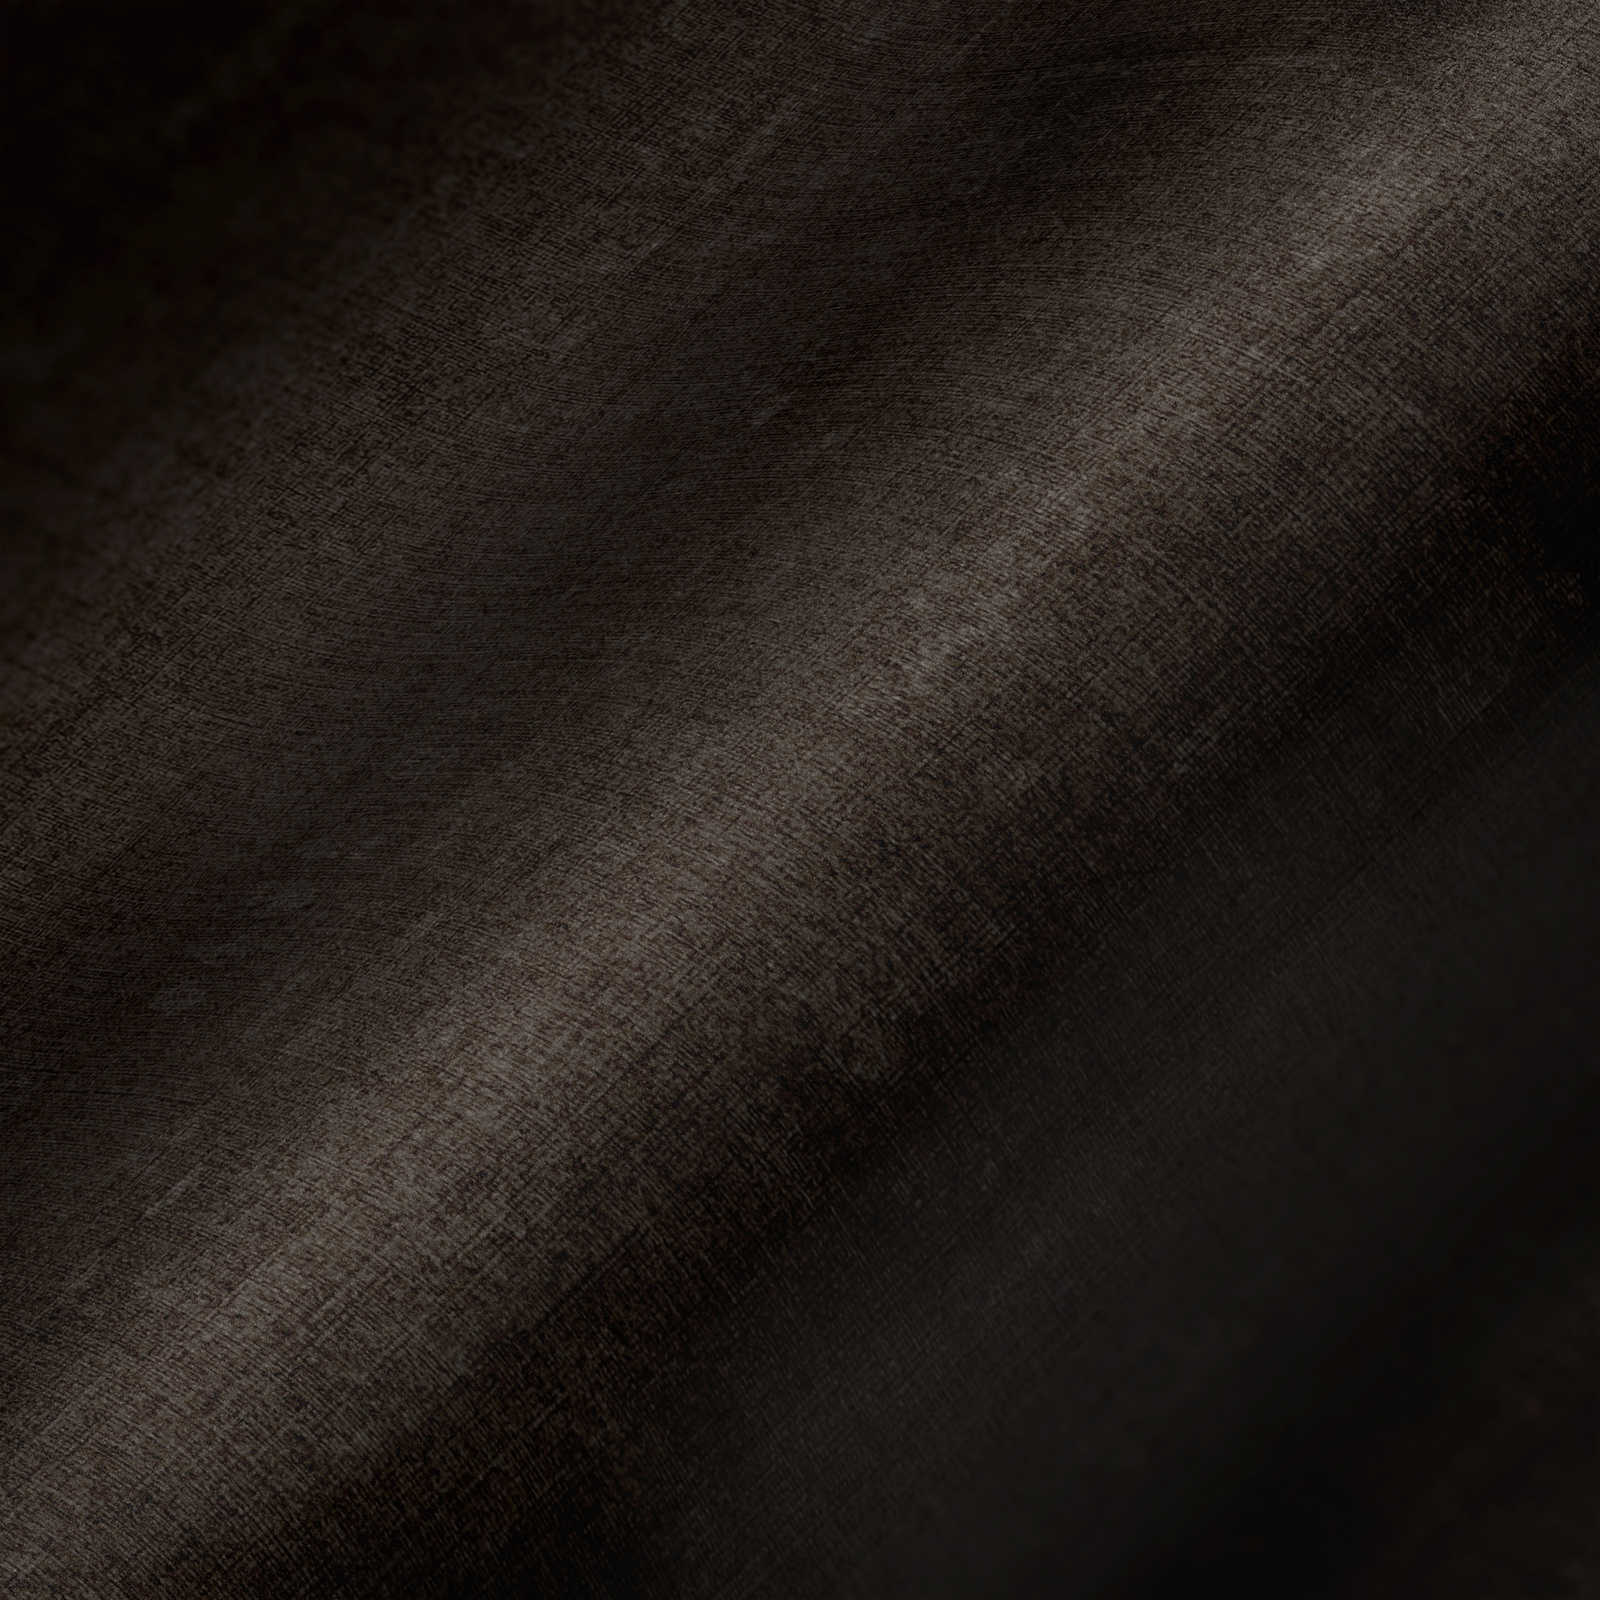             Papel pintado Melange liso con diseño de estructura - gris, negro
        